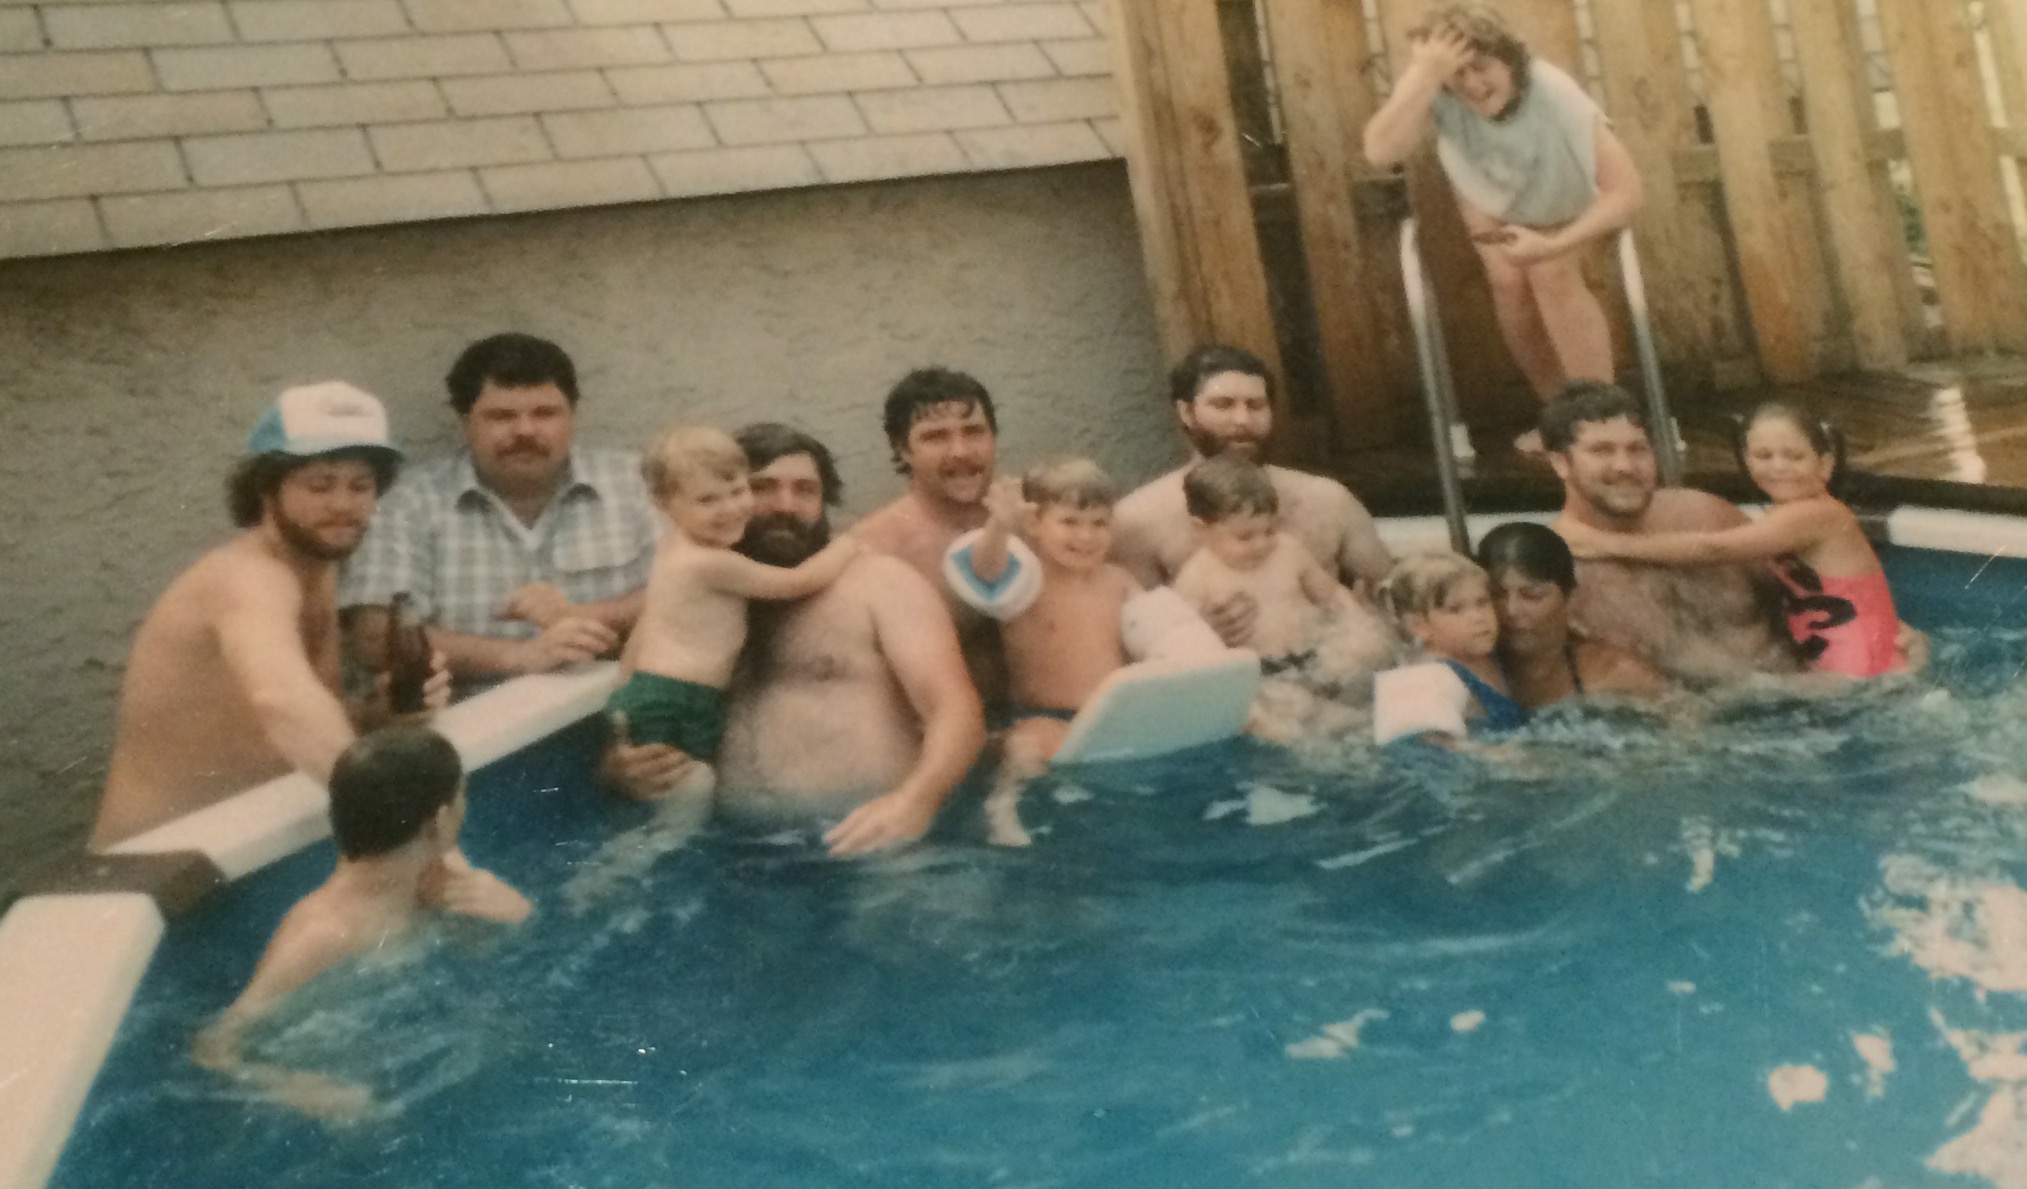  Some of Matt's extended family enjoying&nbsp;the pool. 